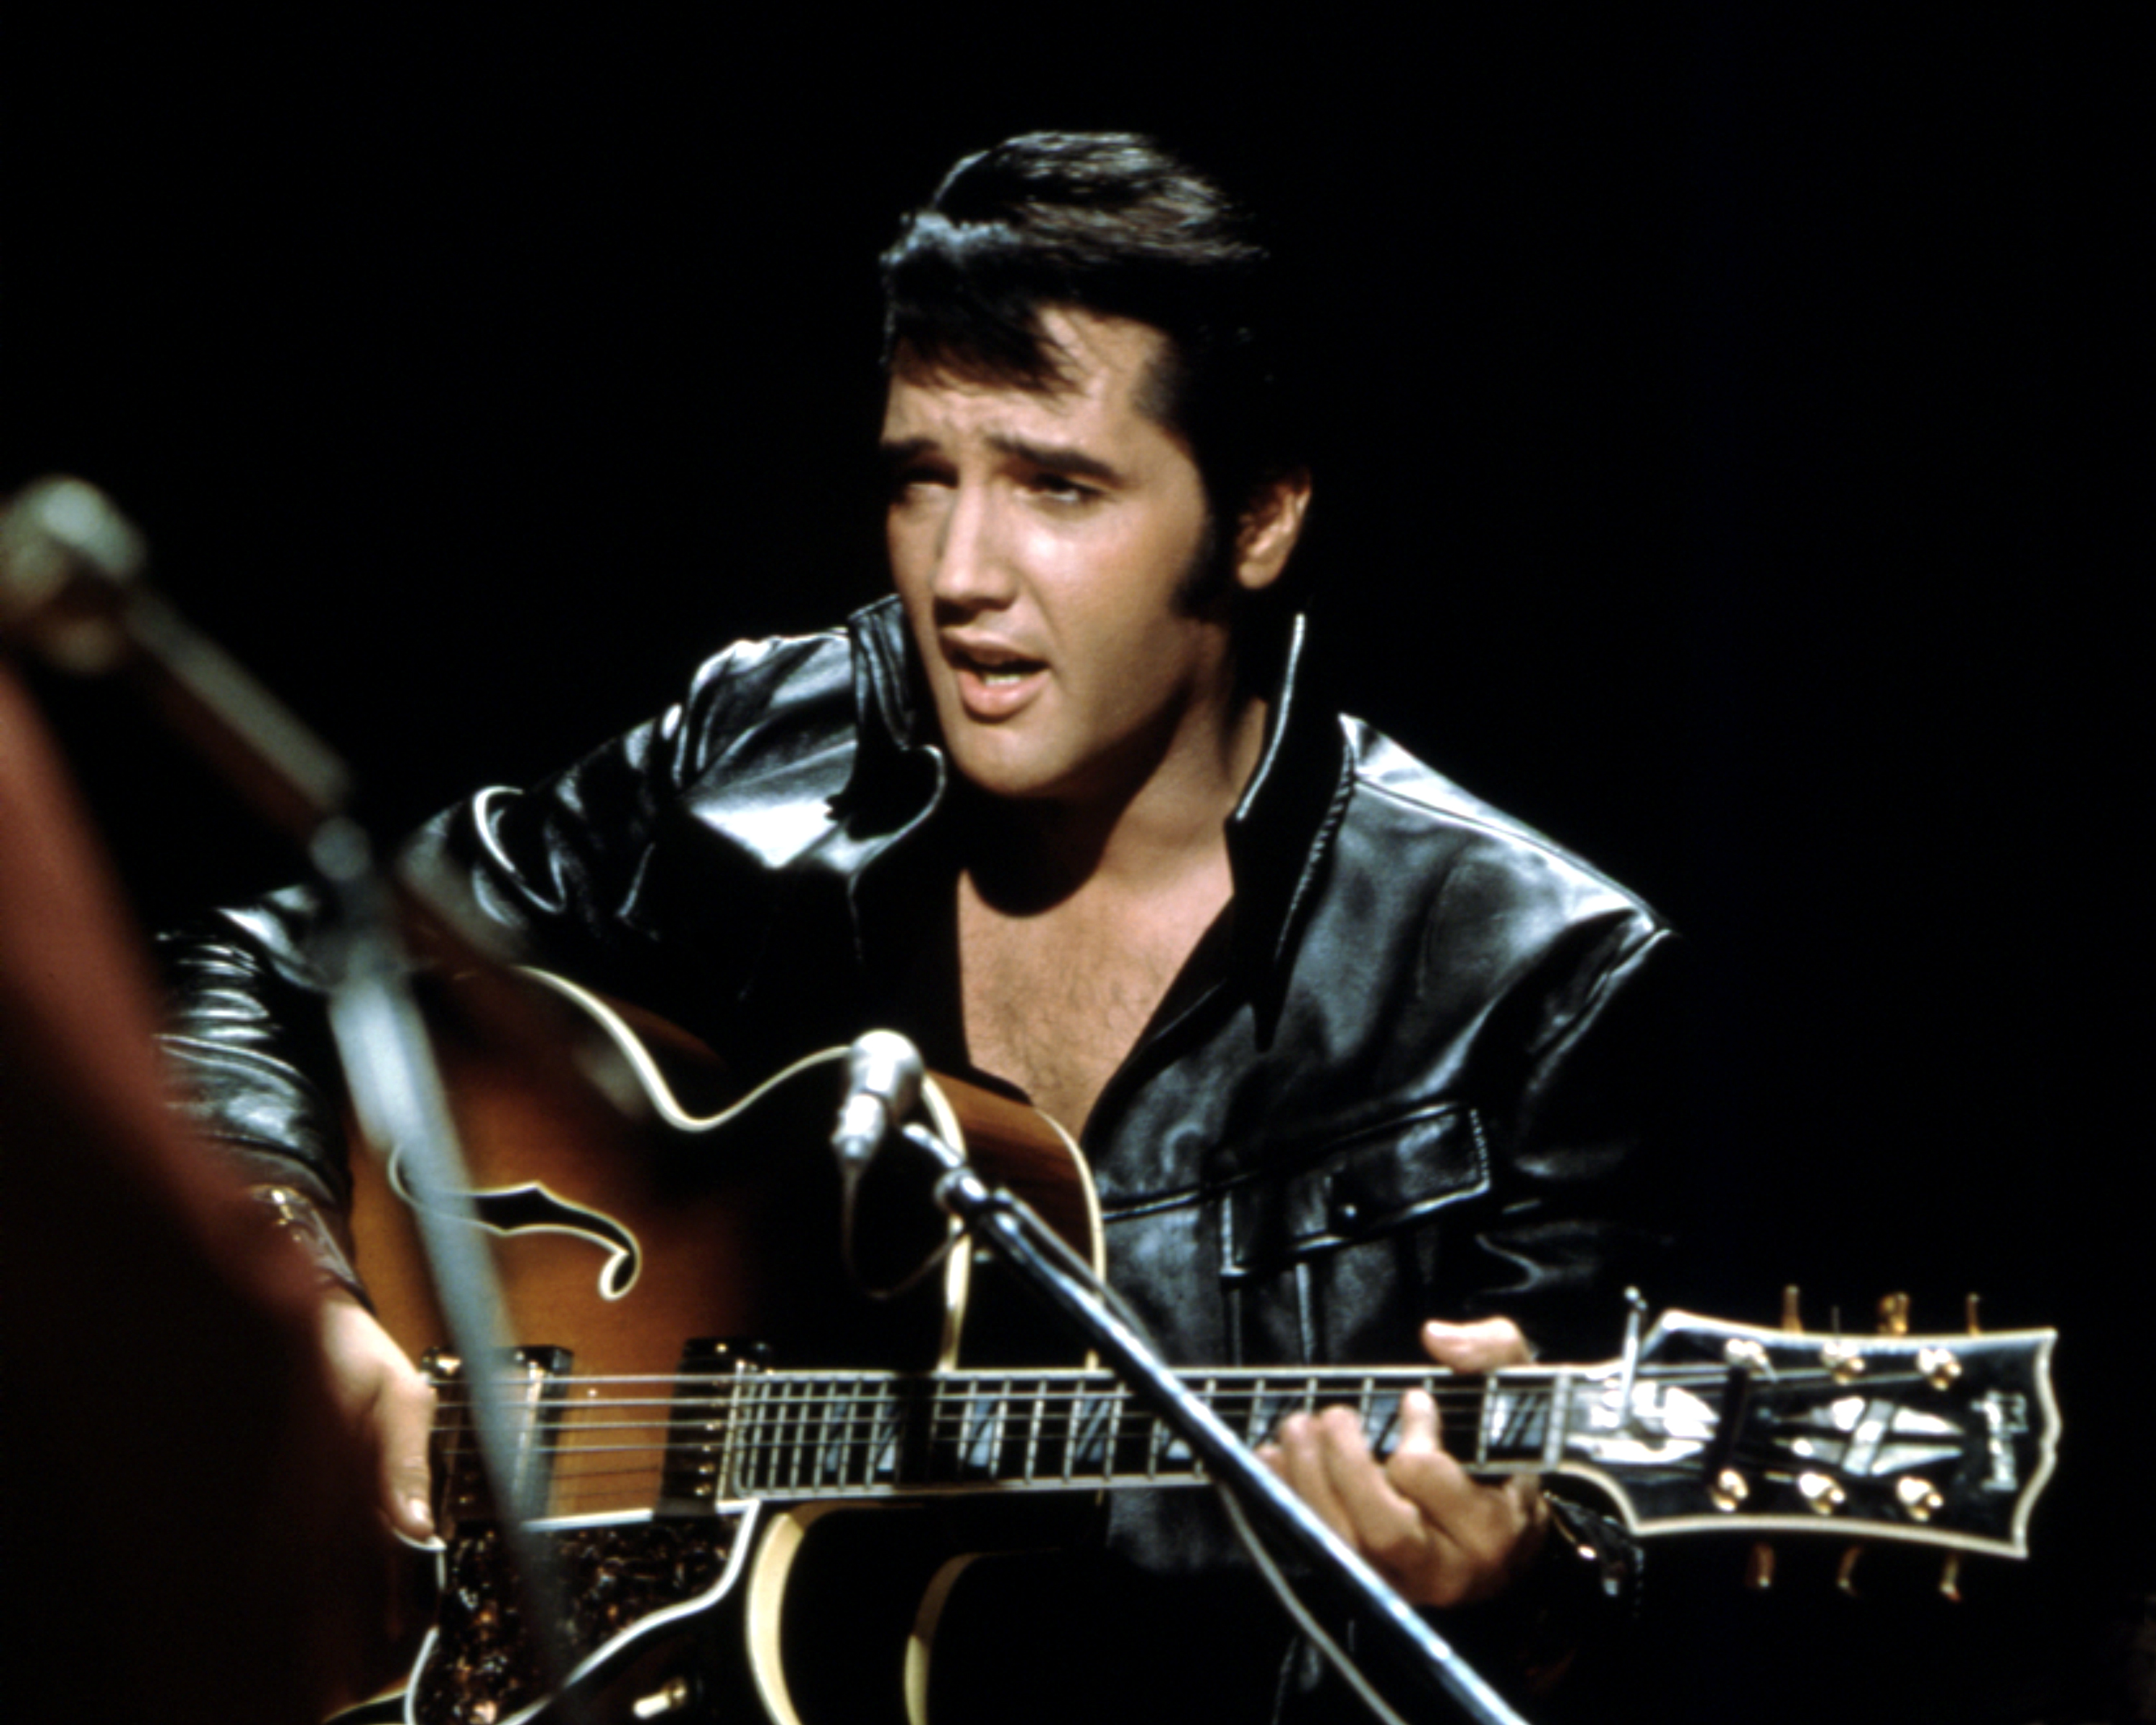 Elvis Presley wearing a black jacket